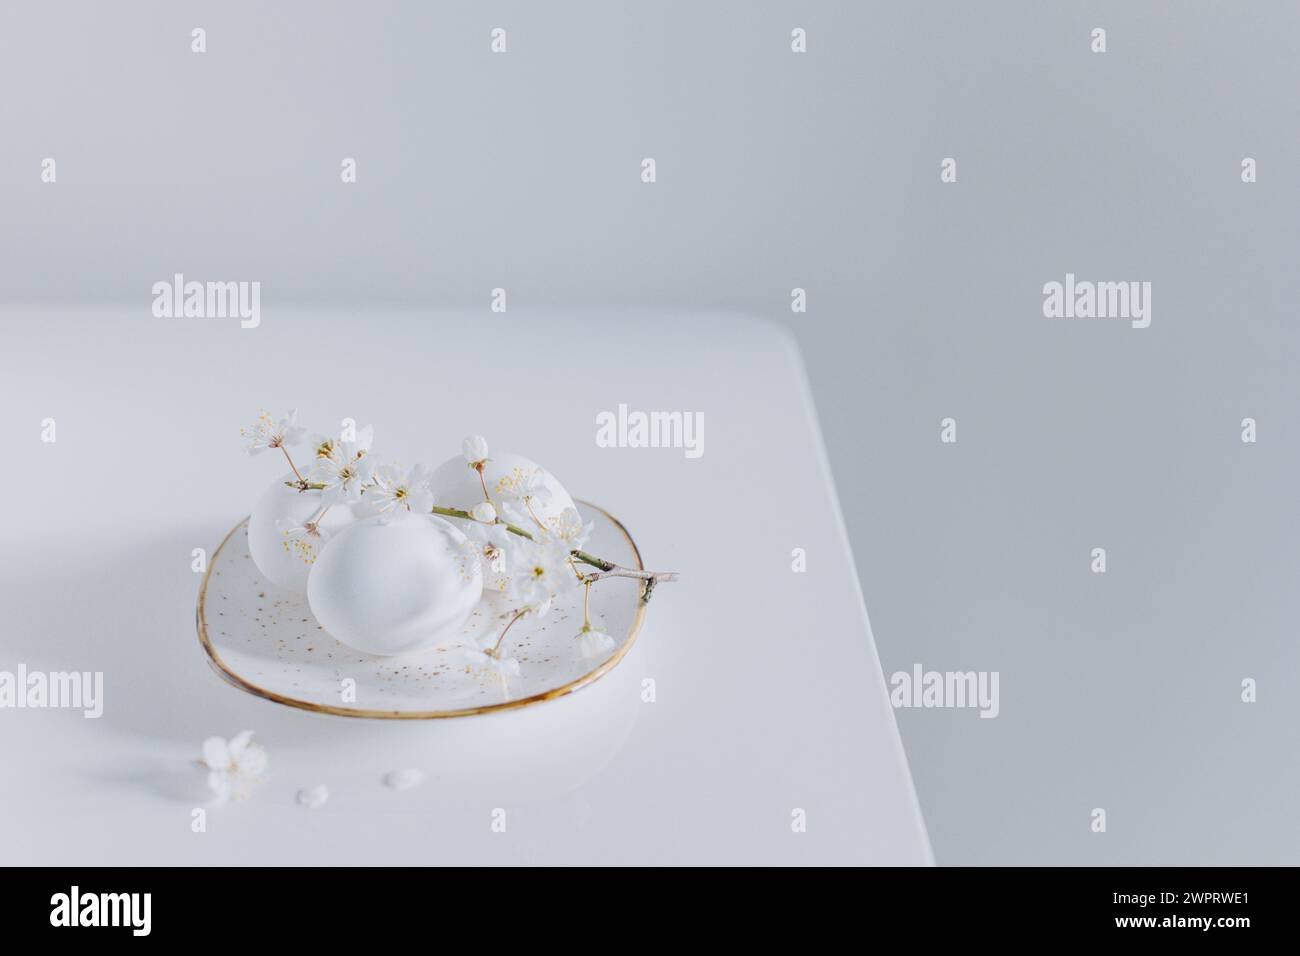 Belle branche avec fleur blanche et oeufs sur fond blanc. Concept minimal. Placer pour le texte. Banque D'Images